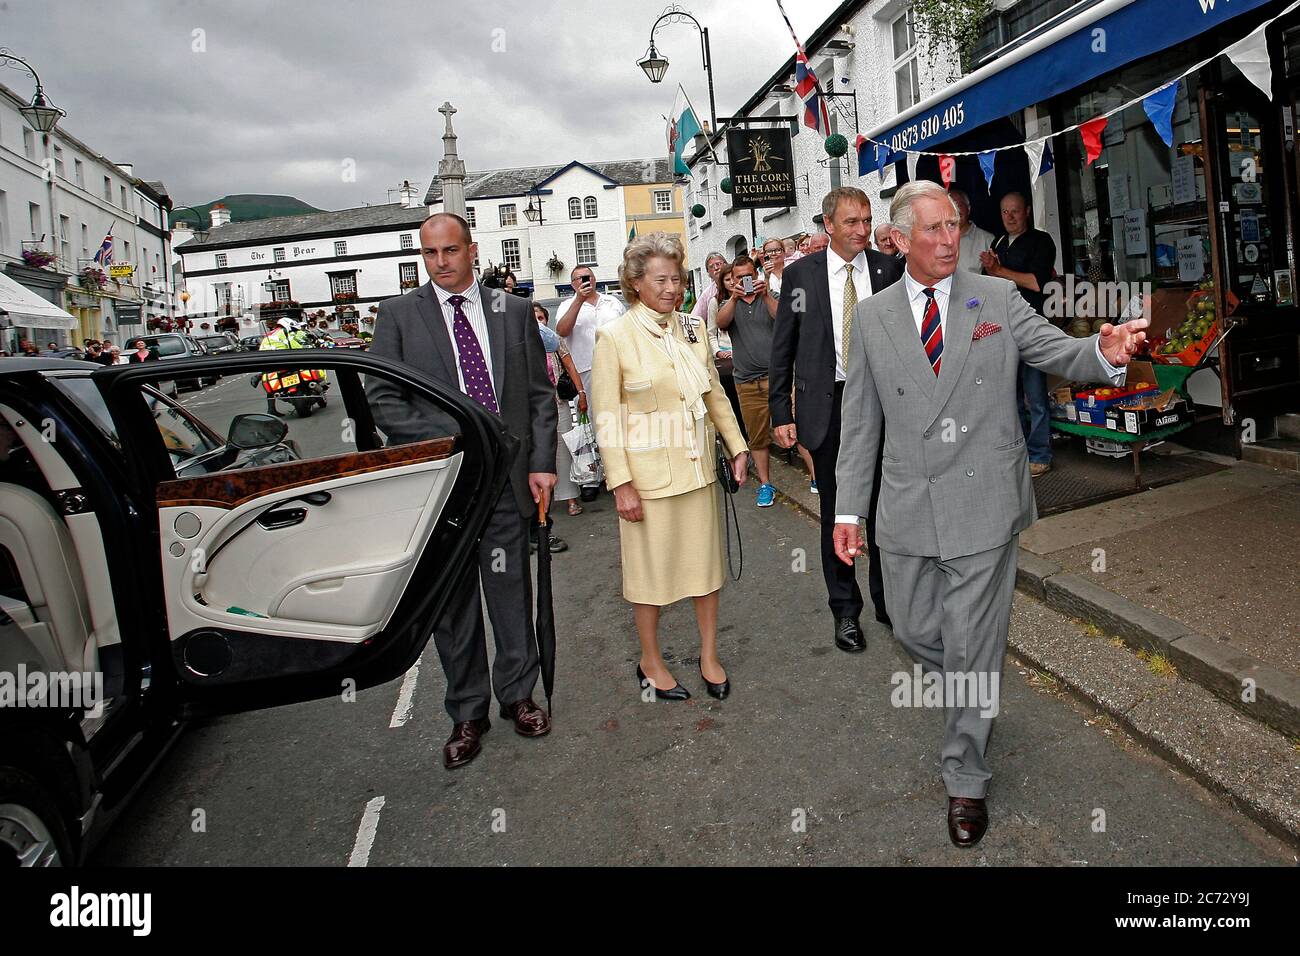 Prince Charles hace una parada rápida en Crickhowell Town, Powys, Gales, para hablar con multitudes de locales y comerciantes, el 3 de julio de 2014. ©PRWPhoto Foto de stock